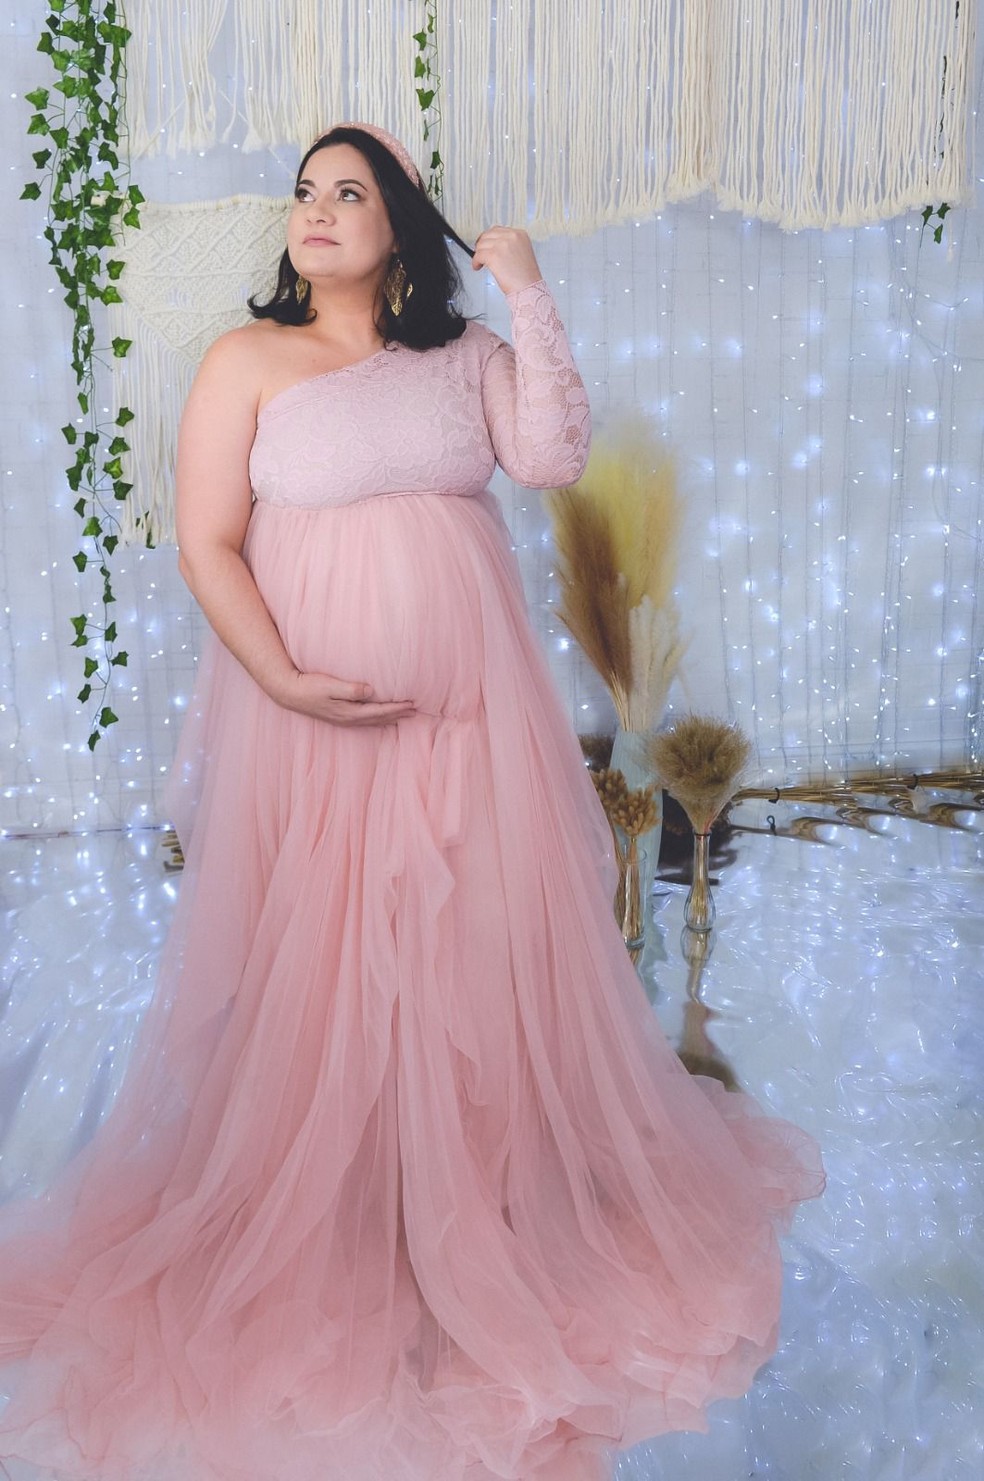 Cida engravidou de Valentina aos 38 anos — Foto: Acervo pessoal